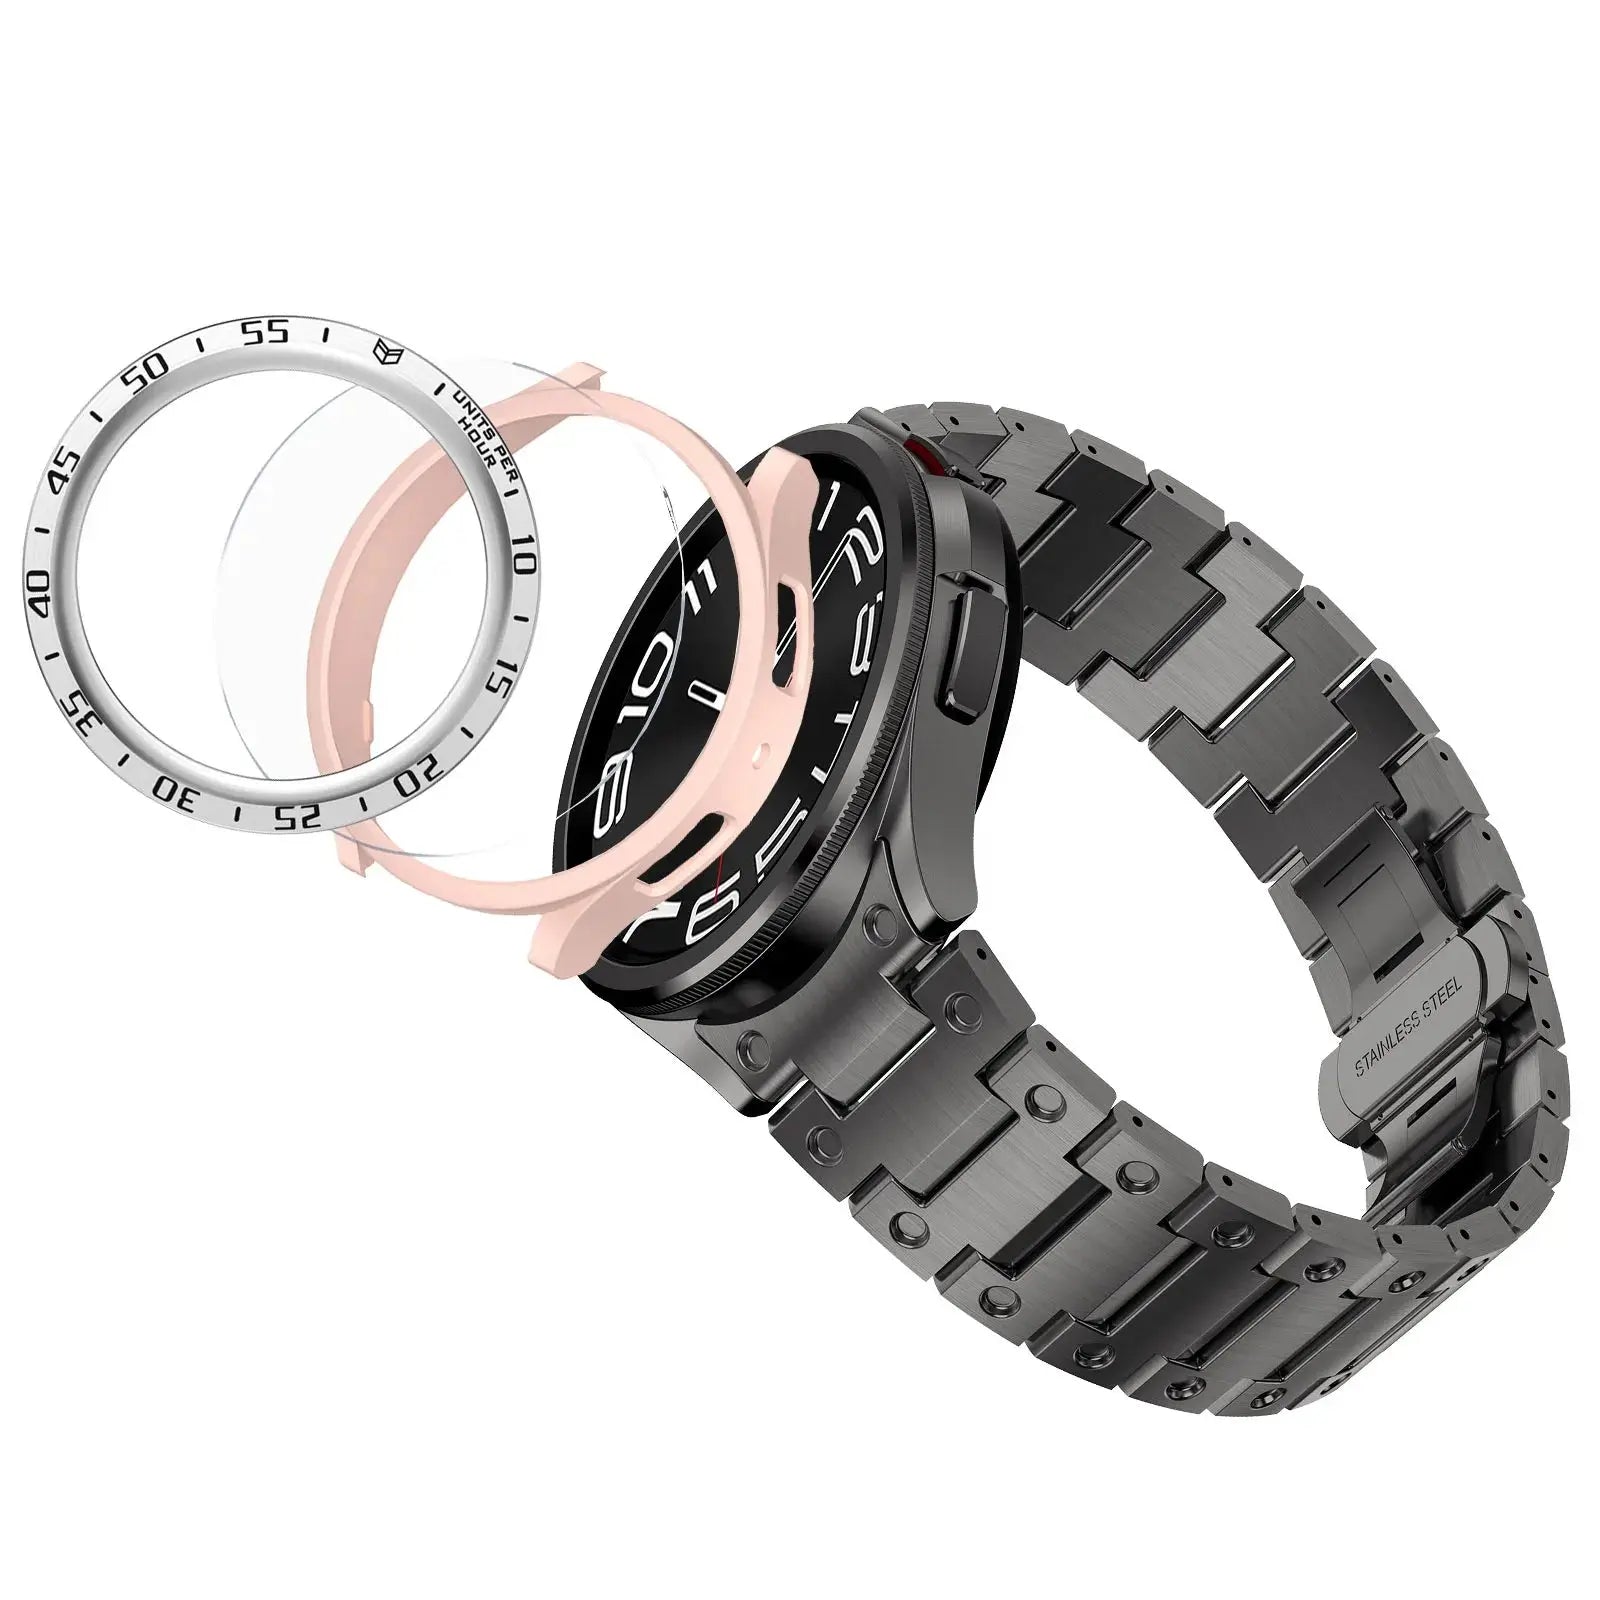 Titanium Elegance Band & Armor Case for Samsung Galaxy Watch